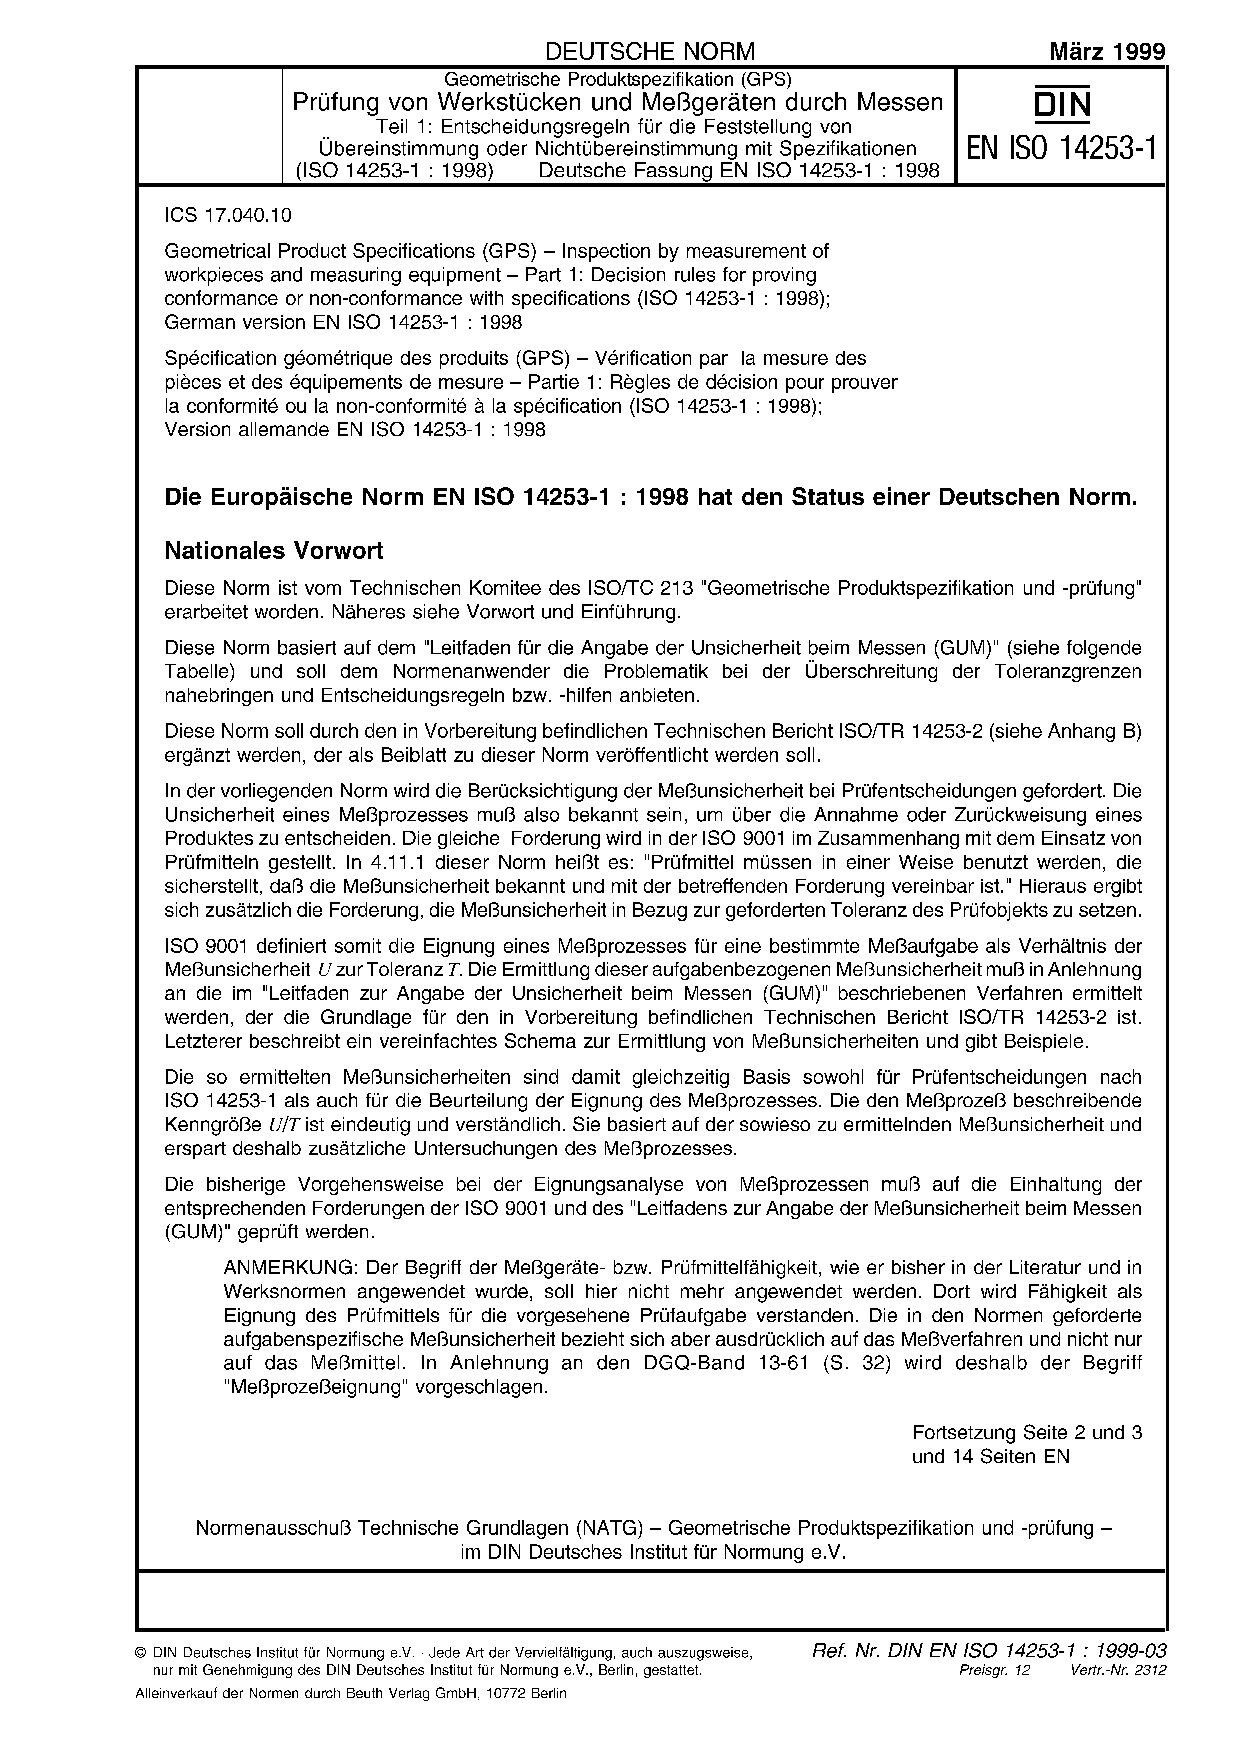 DIN EN ISO 14253-1:1999封面图